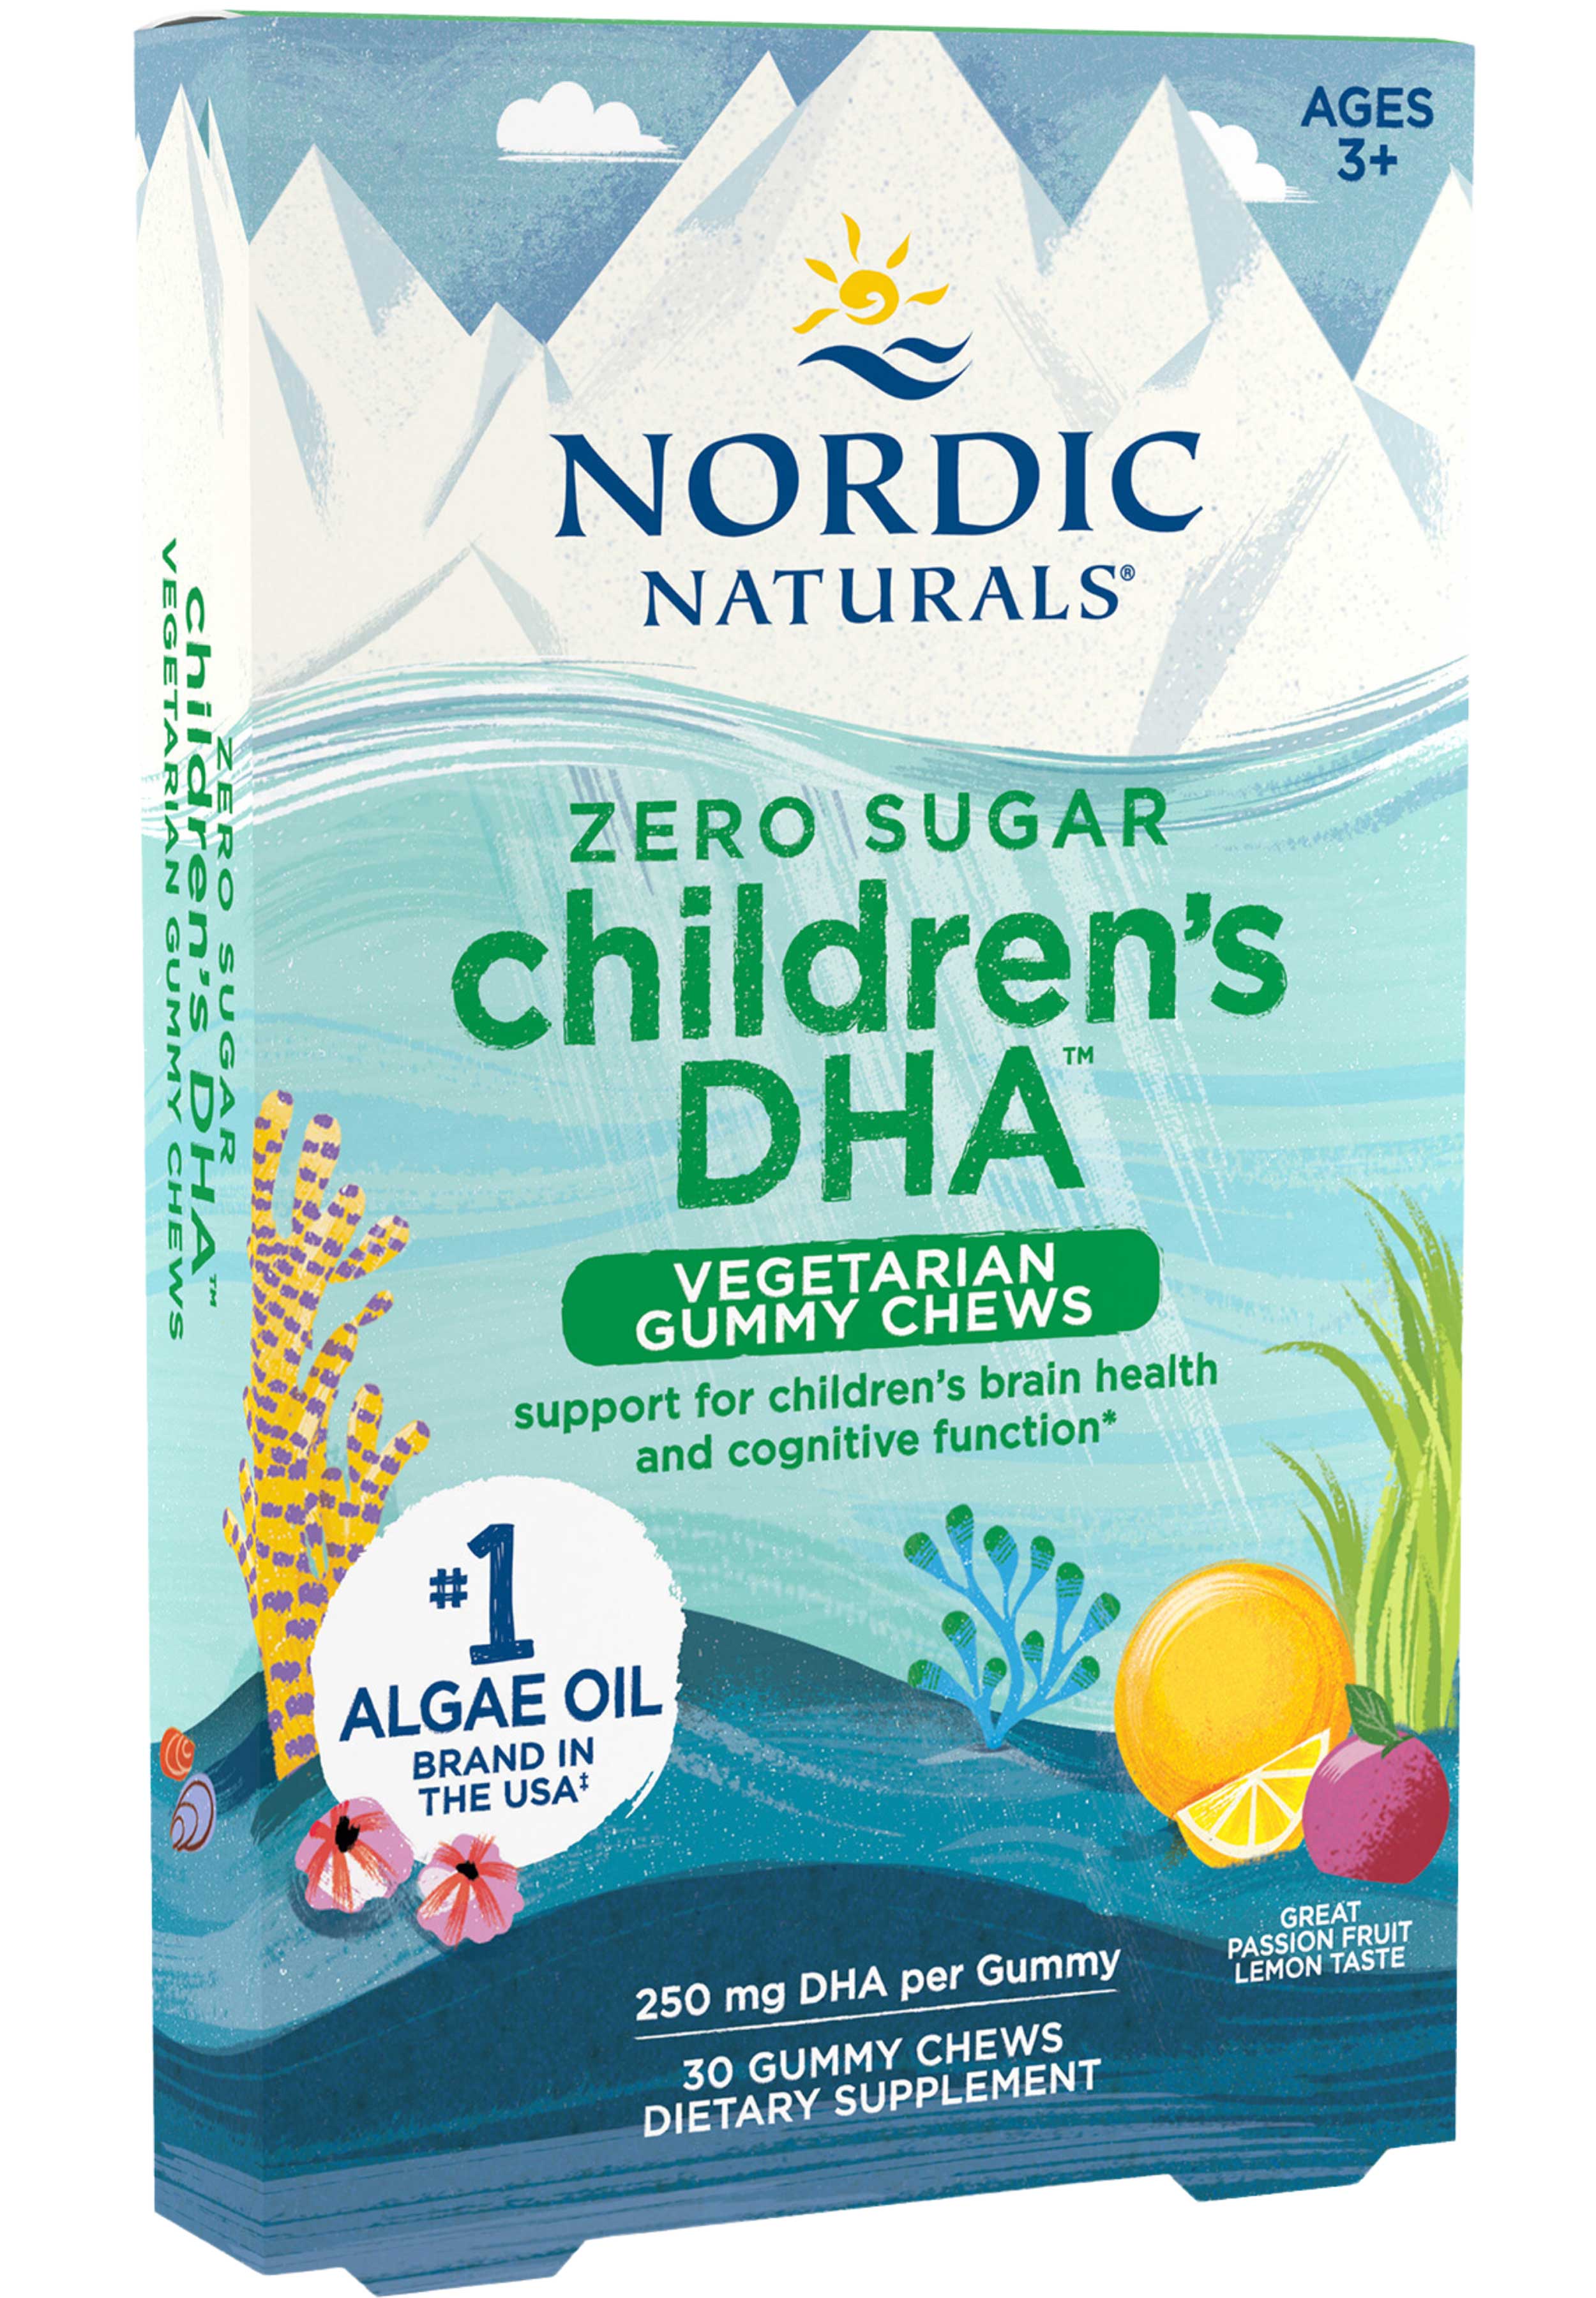 Nordic Naturals Zero Sugar Children's DHA™ Vegetarian Gummy Chews